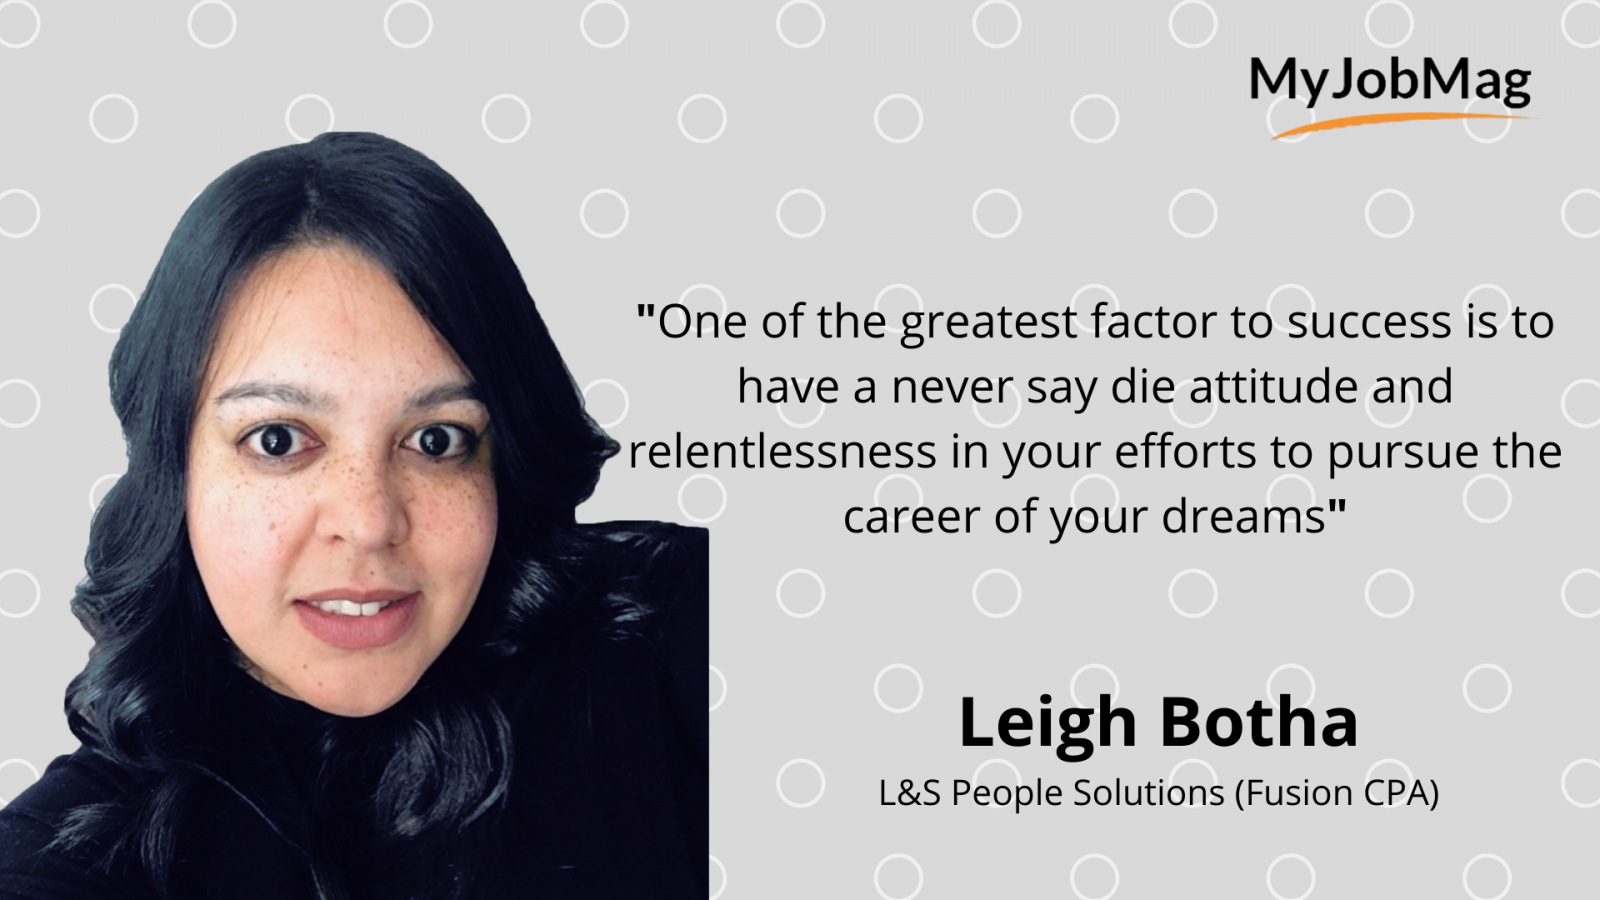 Leigh Botha career advice